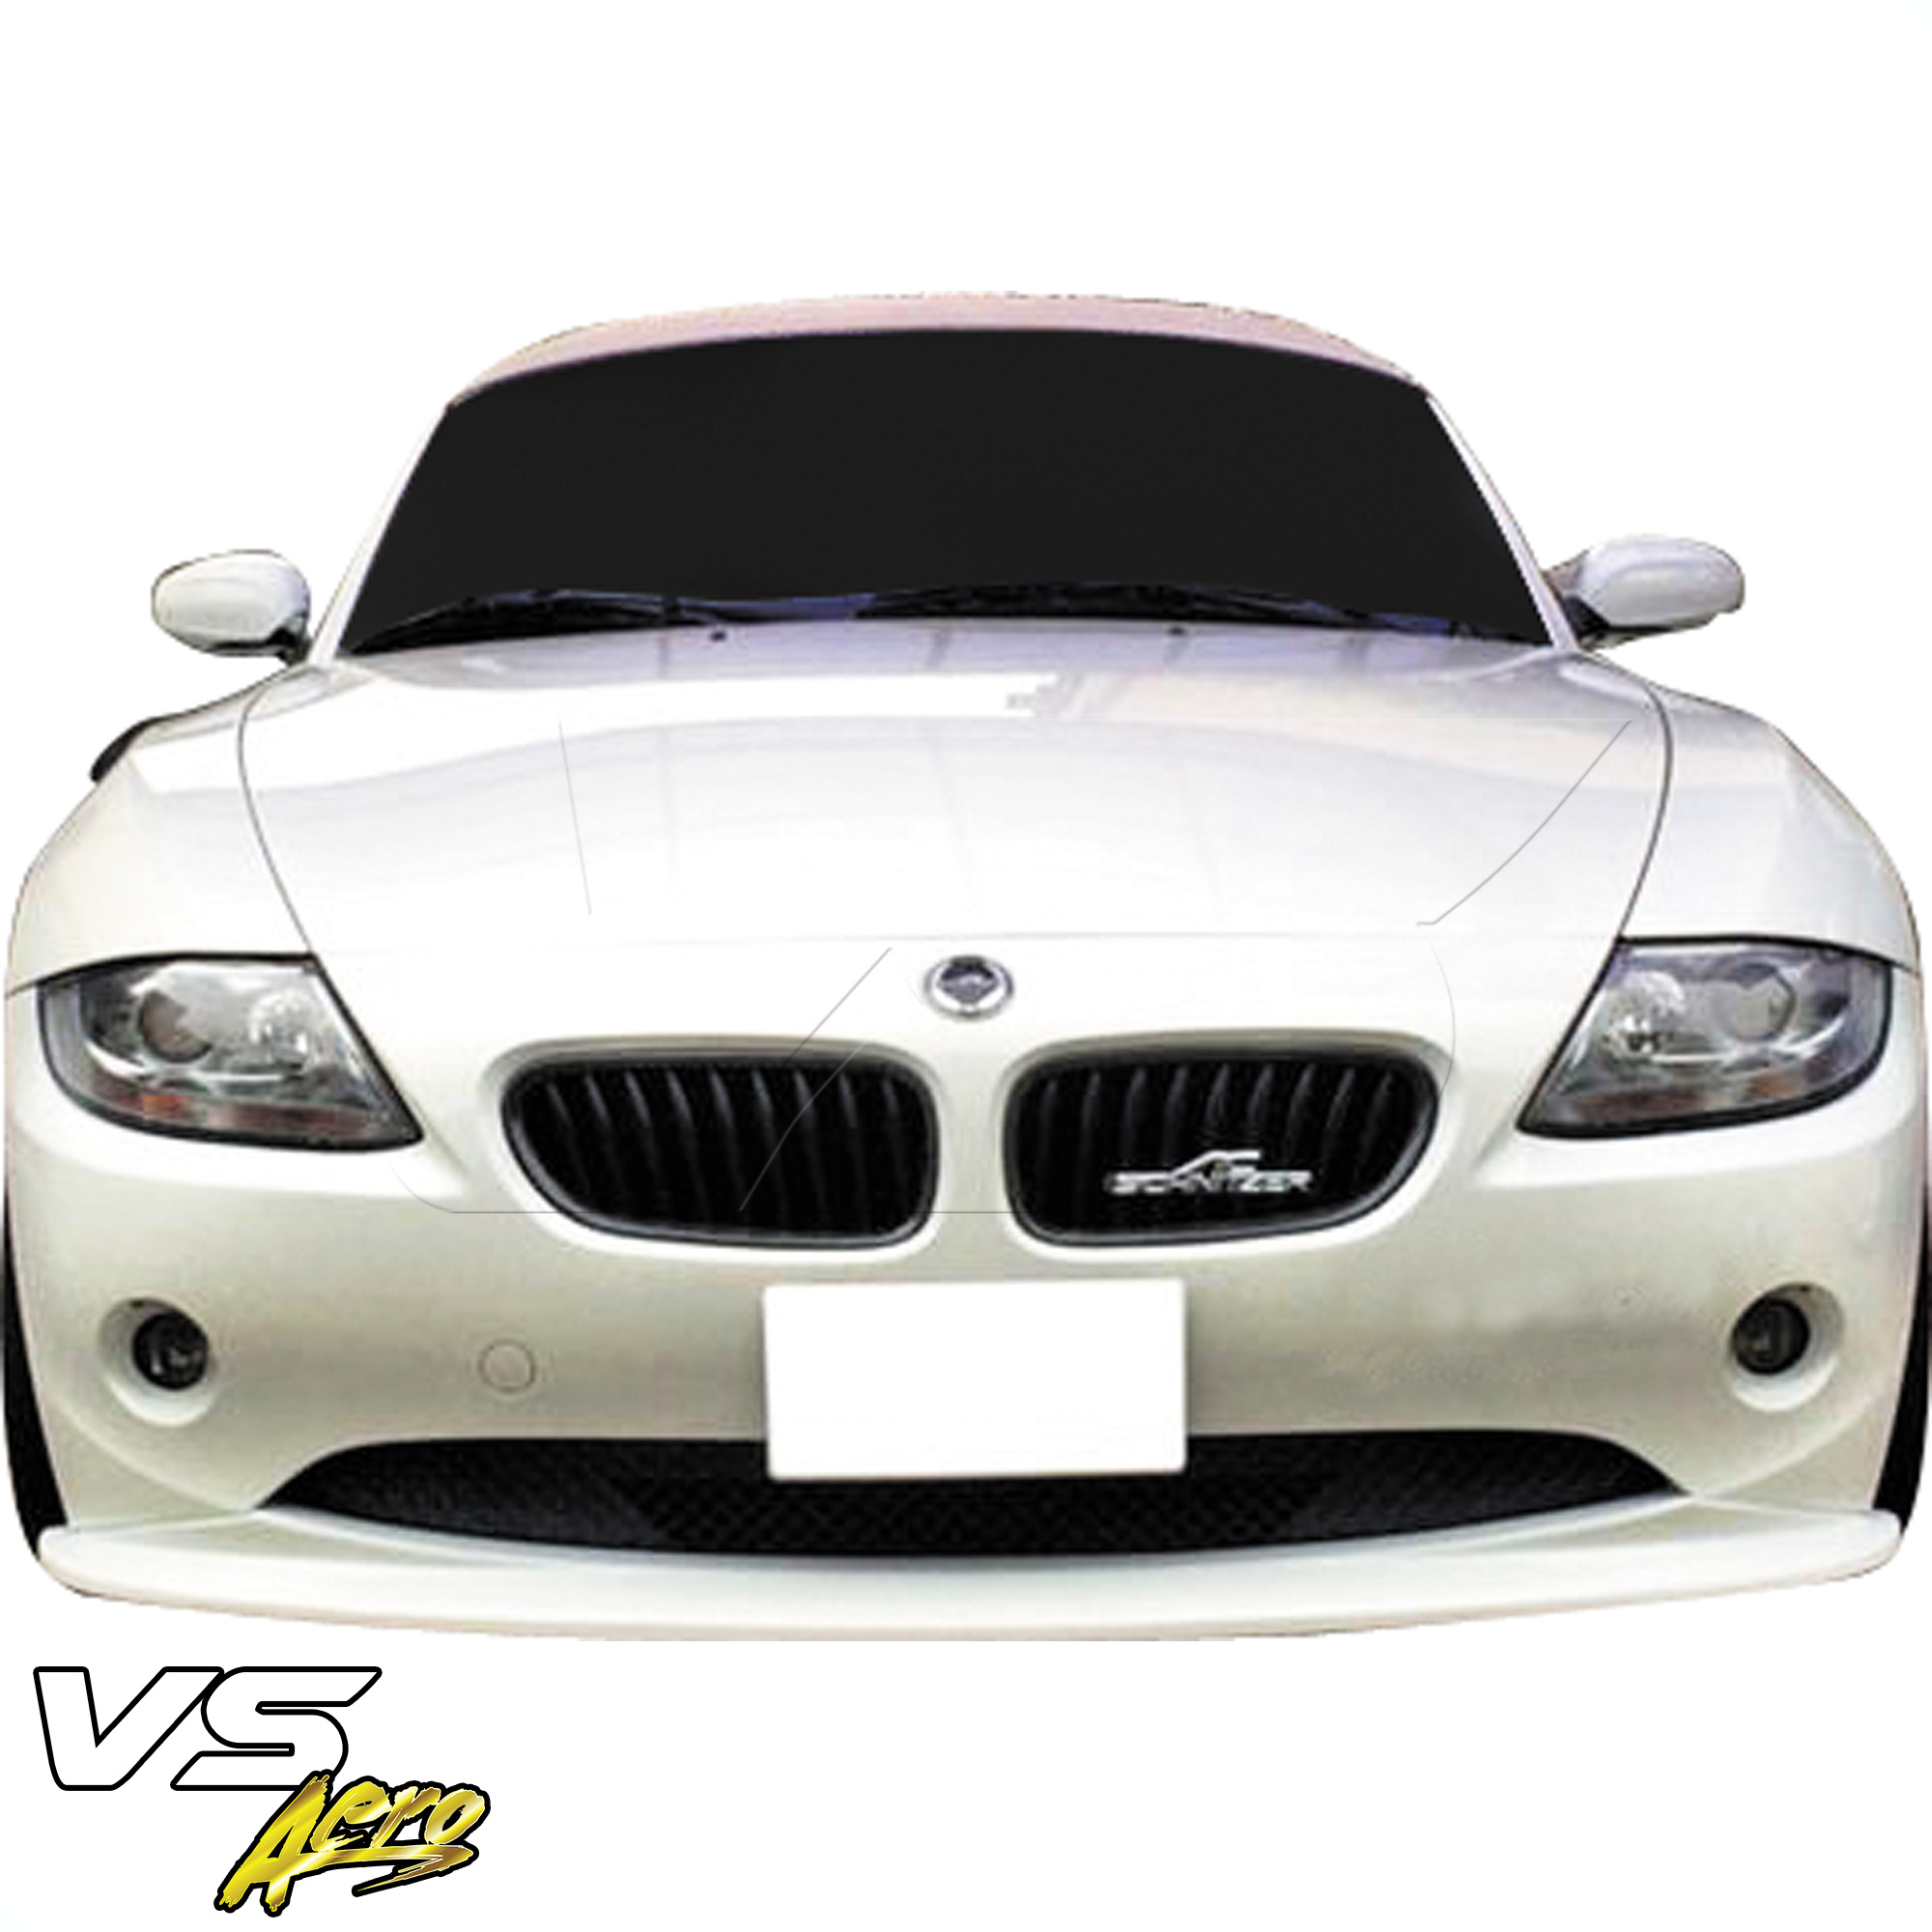 VSaero FRP HAMA Front Lip Valance > BMW Z4 E85 2003-2005 - Image 5